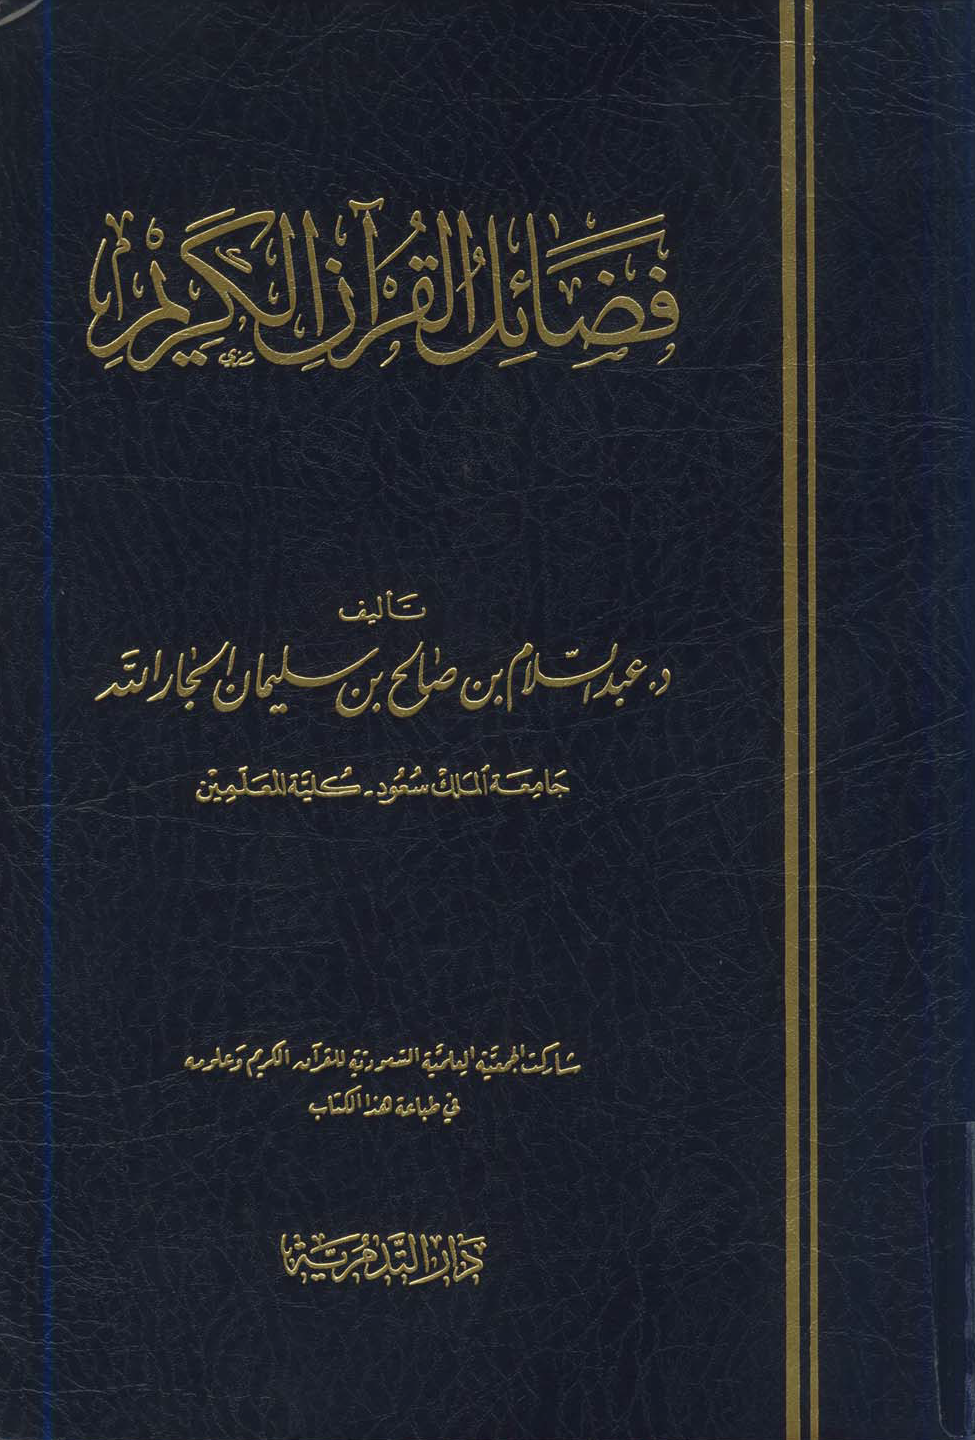 تحميل كتاب فضائل القرآن - عبد السلام الجار الله لـِ: الدكتور عبد السلام بن صالح بن سليمان الجار الله